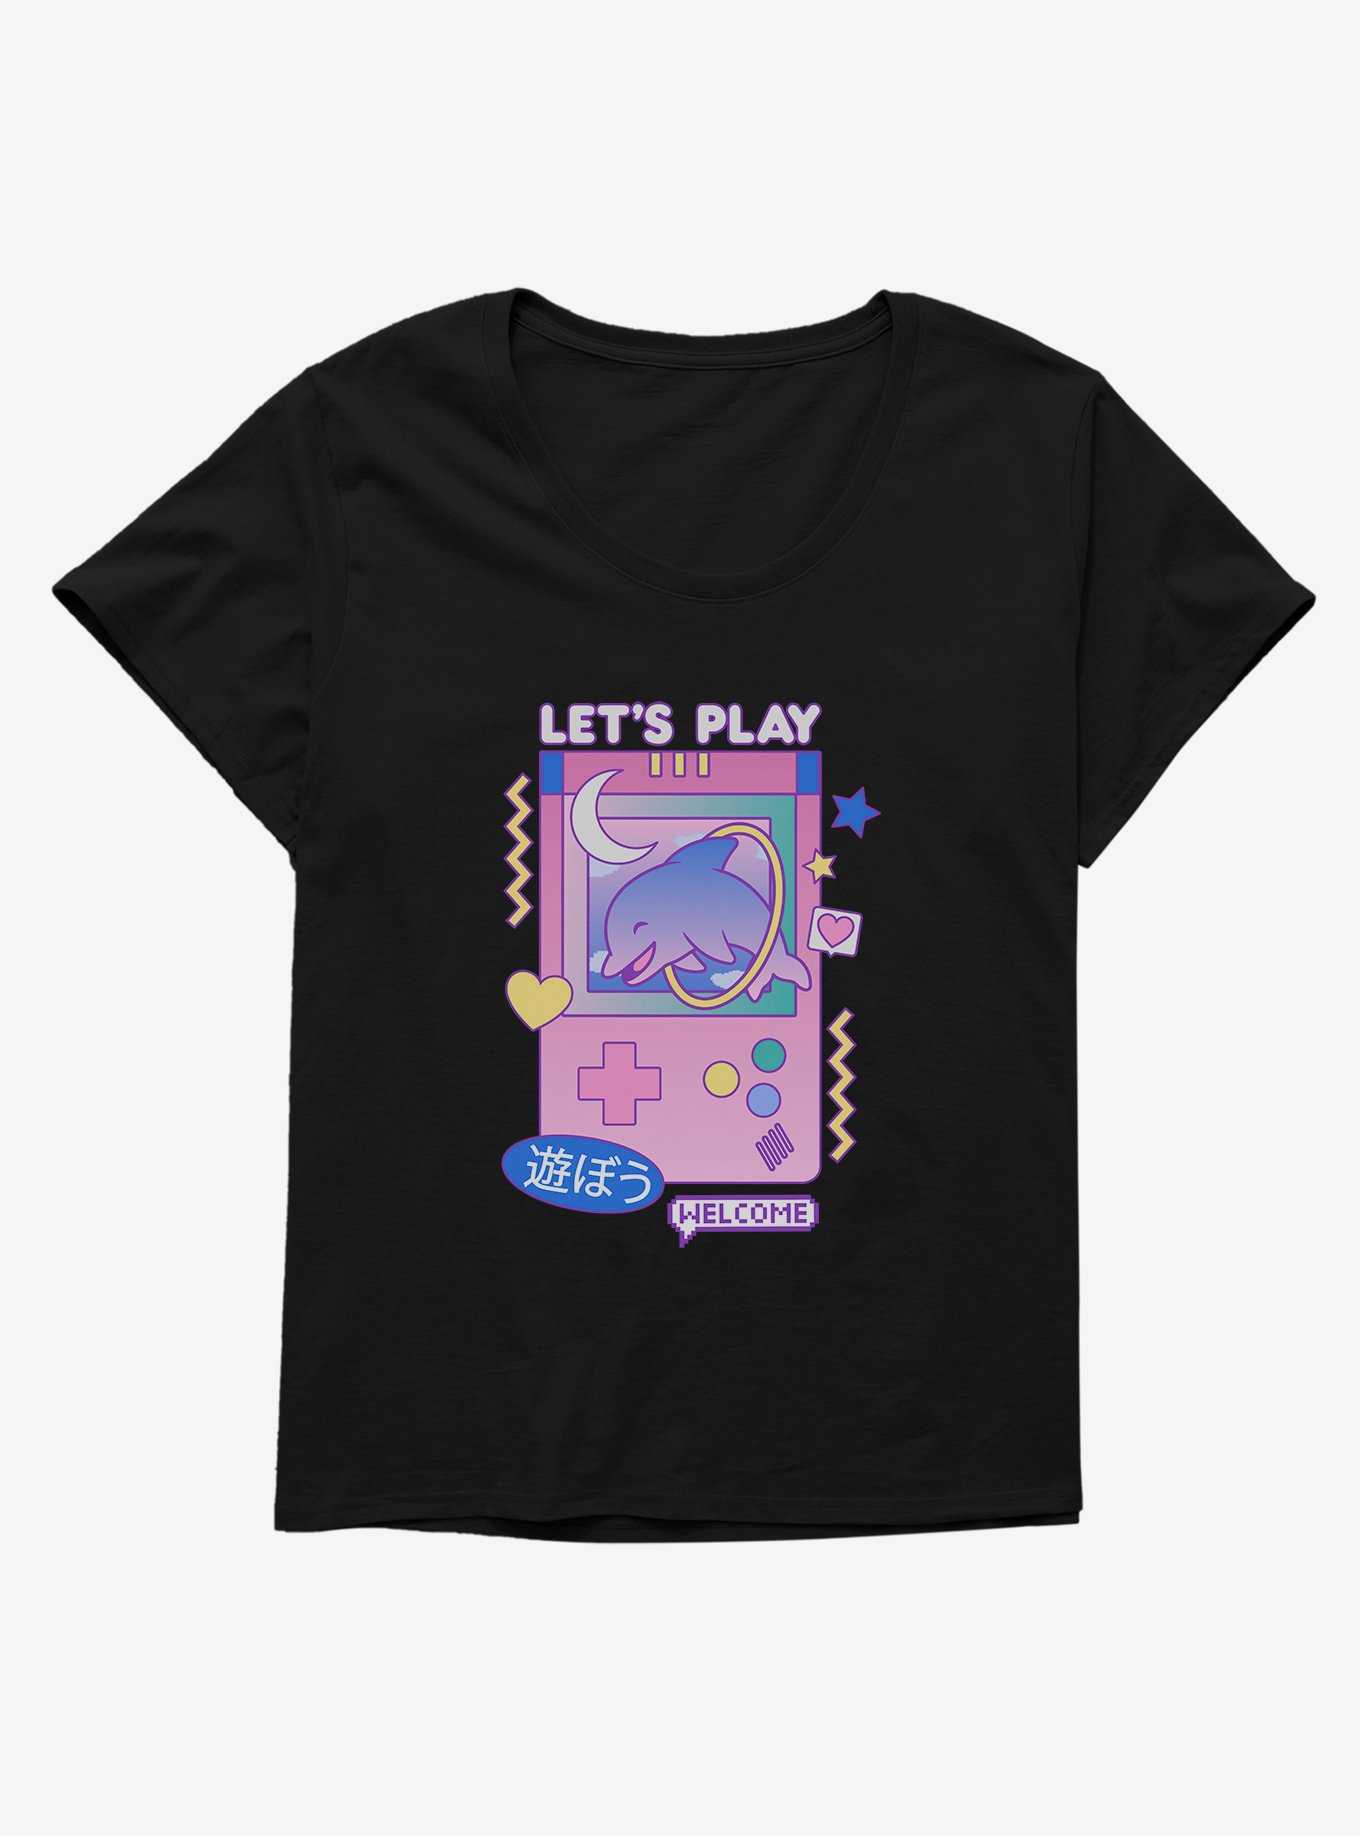 Vaporwave Let's Play Videogames Womens T-Shirt Plus Size, , hi-res